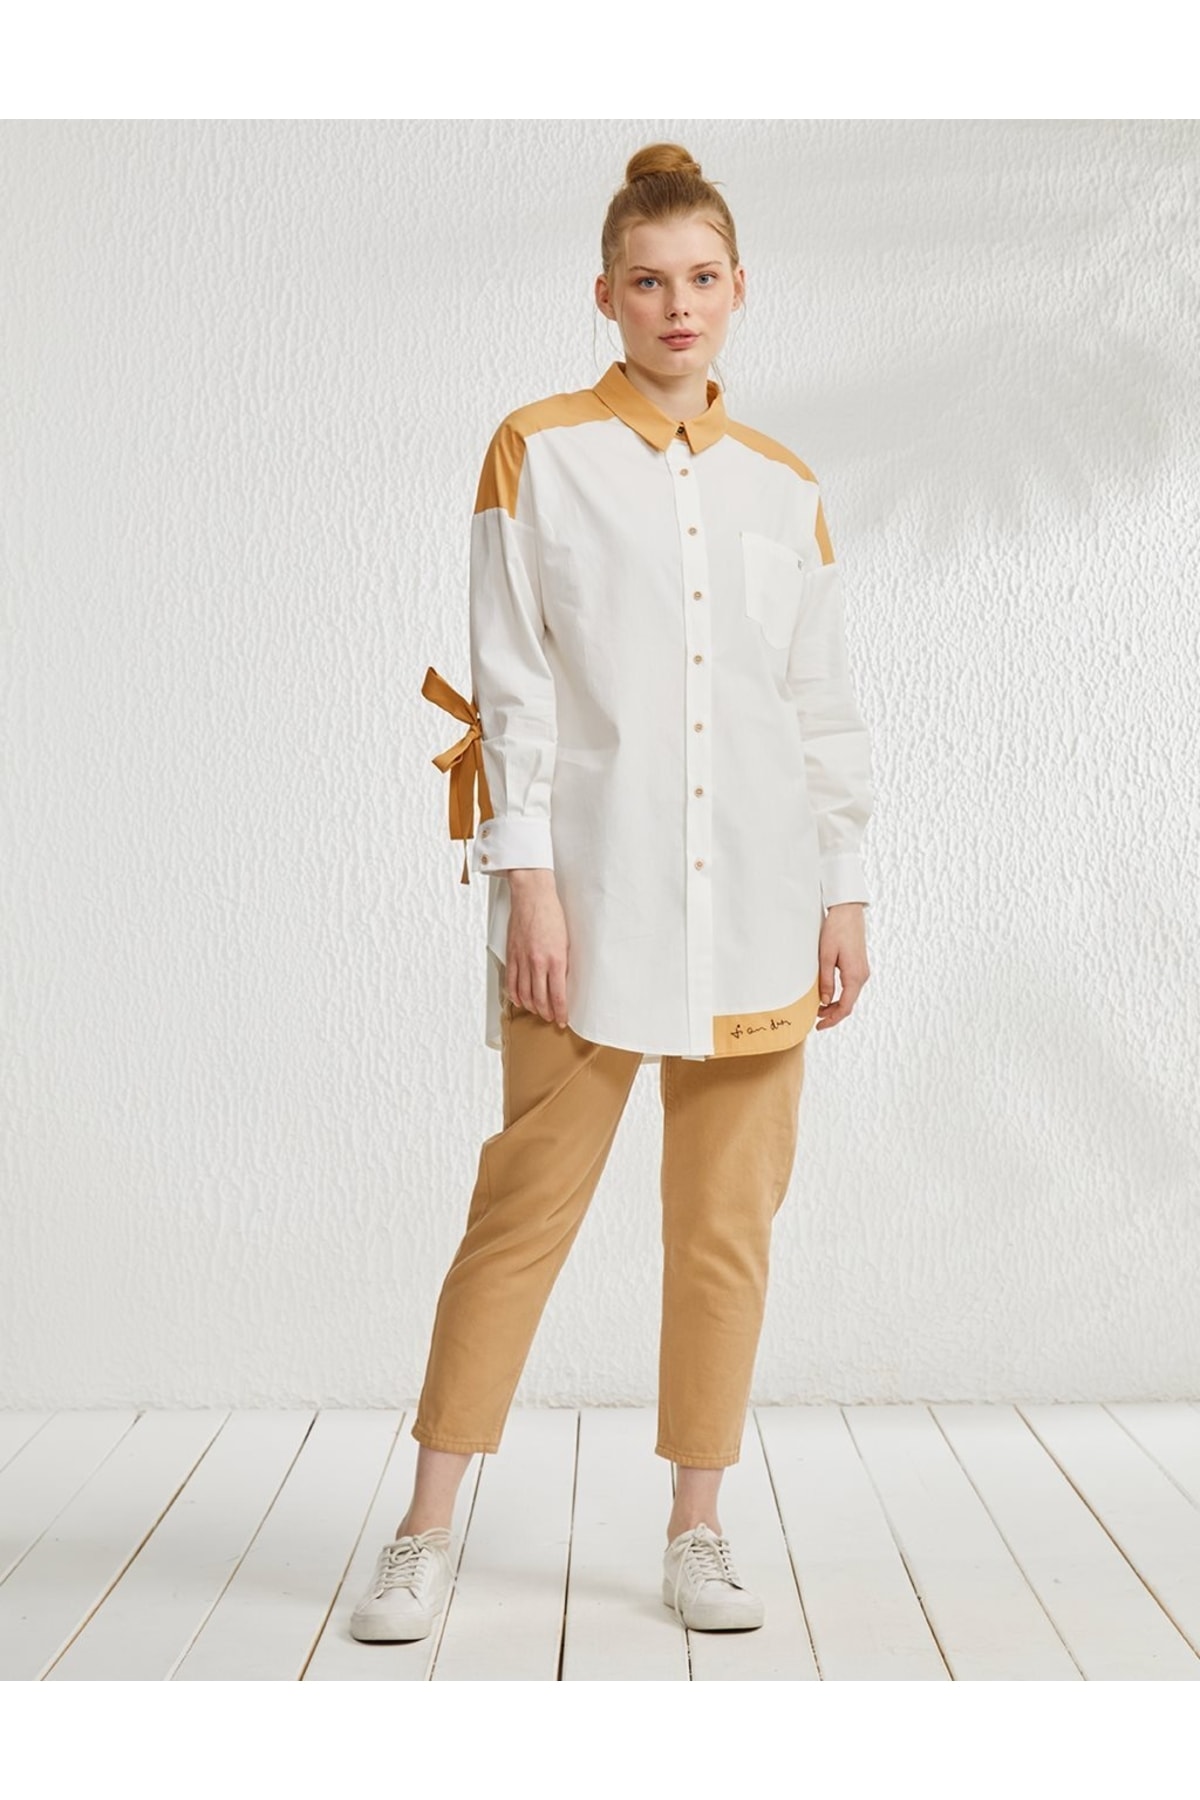 Kayra Renk Bloklu Şerit Detaylı Gömlek Tunik Beyaz-camel